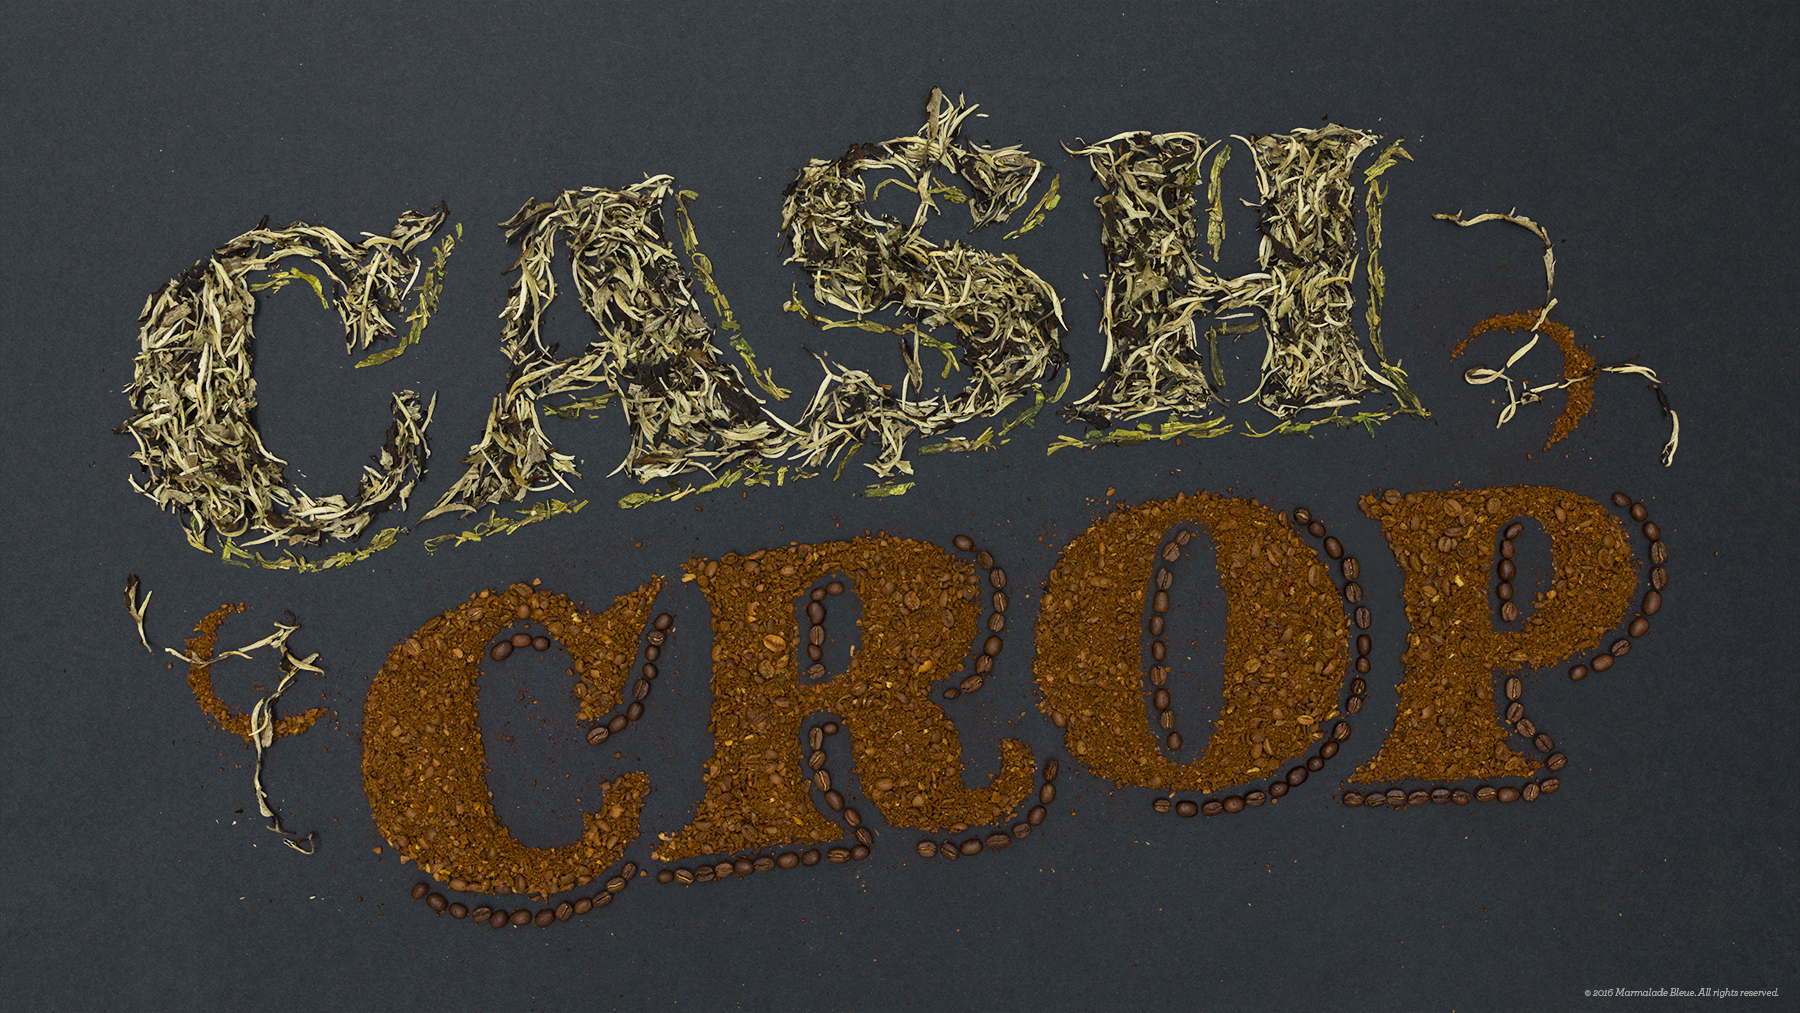 Conde-Nast-Cash-Crops-site.jpg